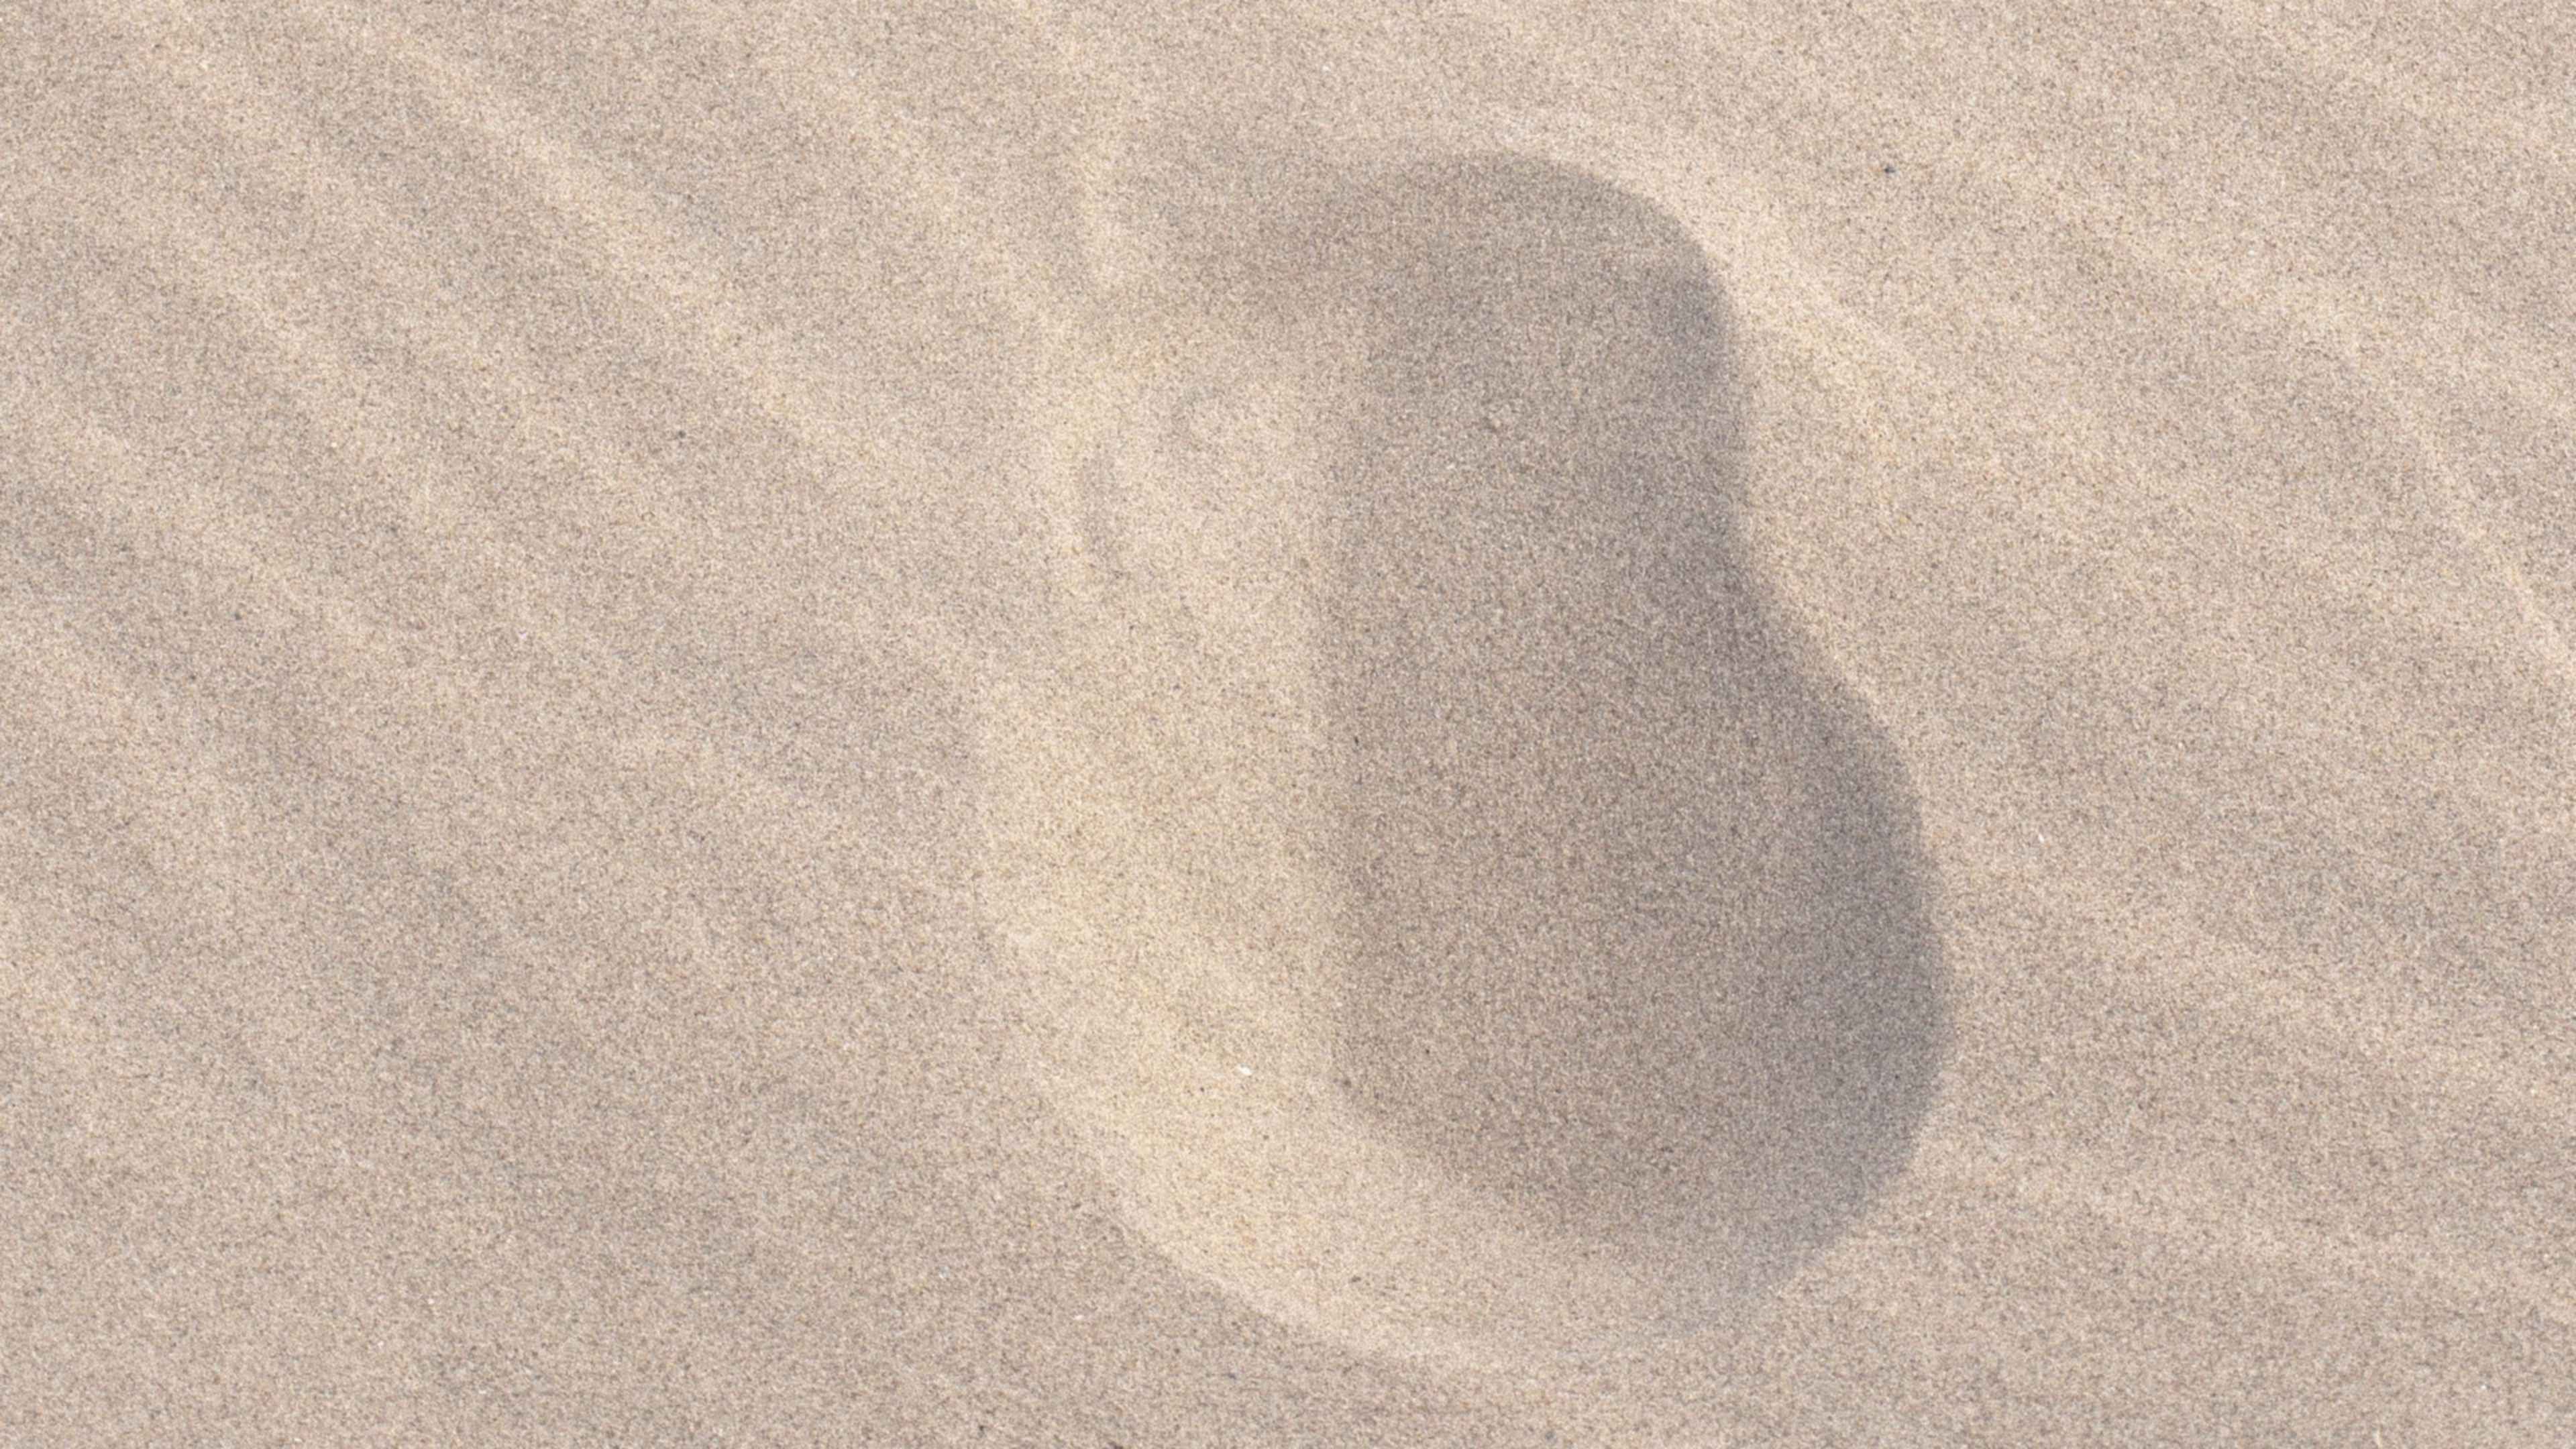 Текст следы на песке. Следы на песке. Следы на берегу моря на песке. Море песок следы тени. Обои на 14 дюймов 1080 песок.